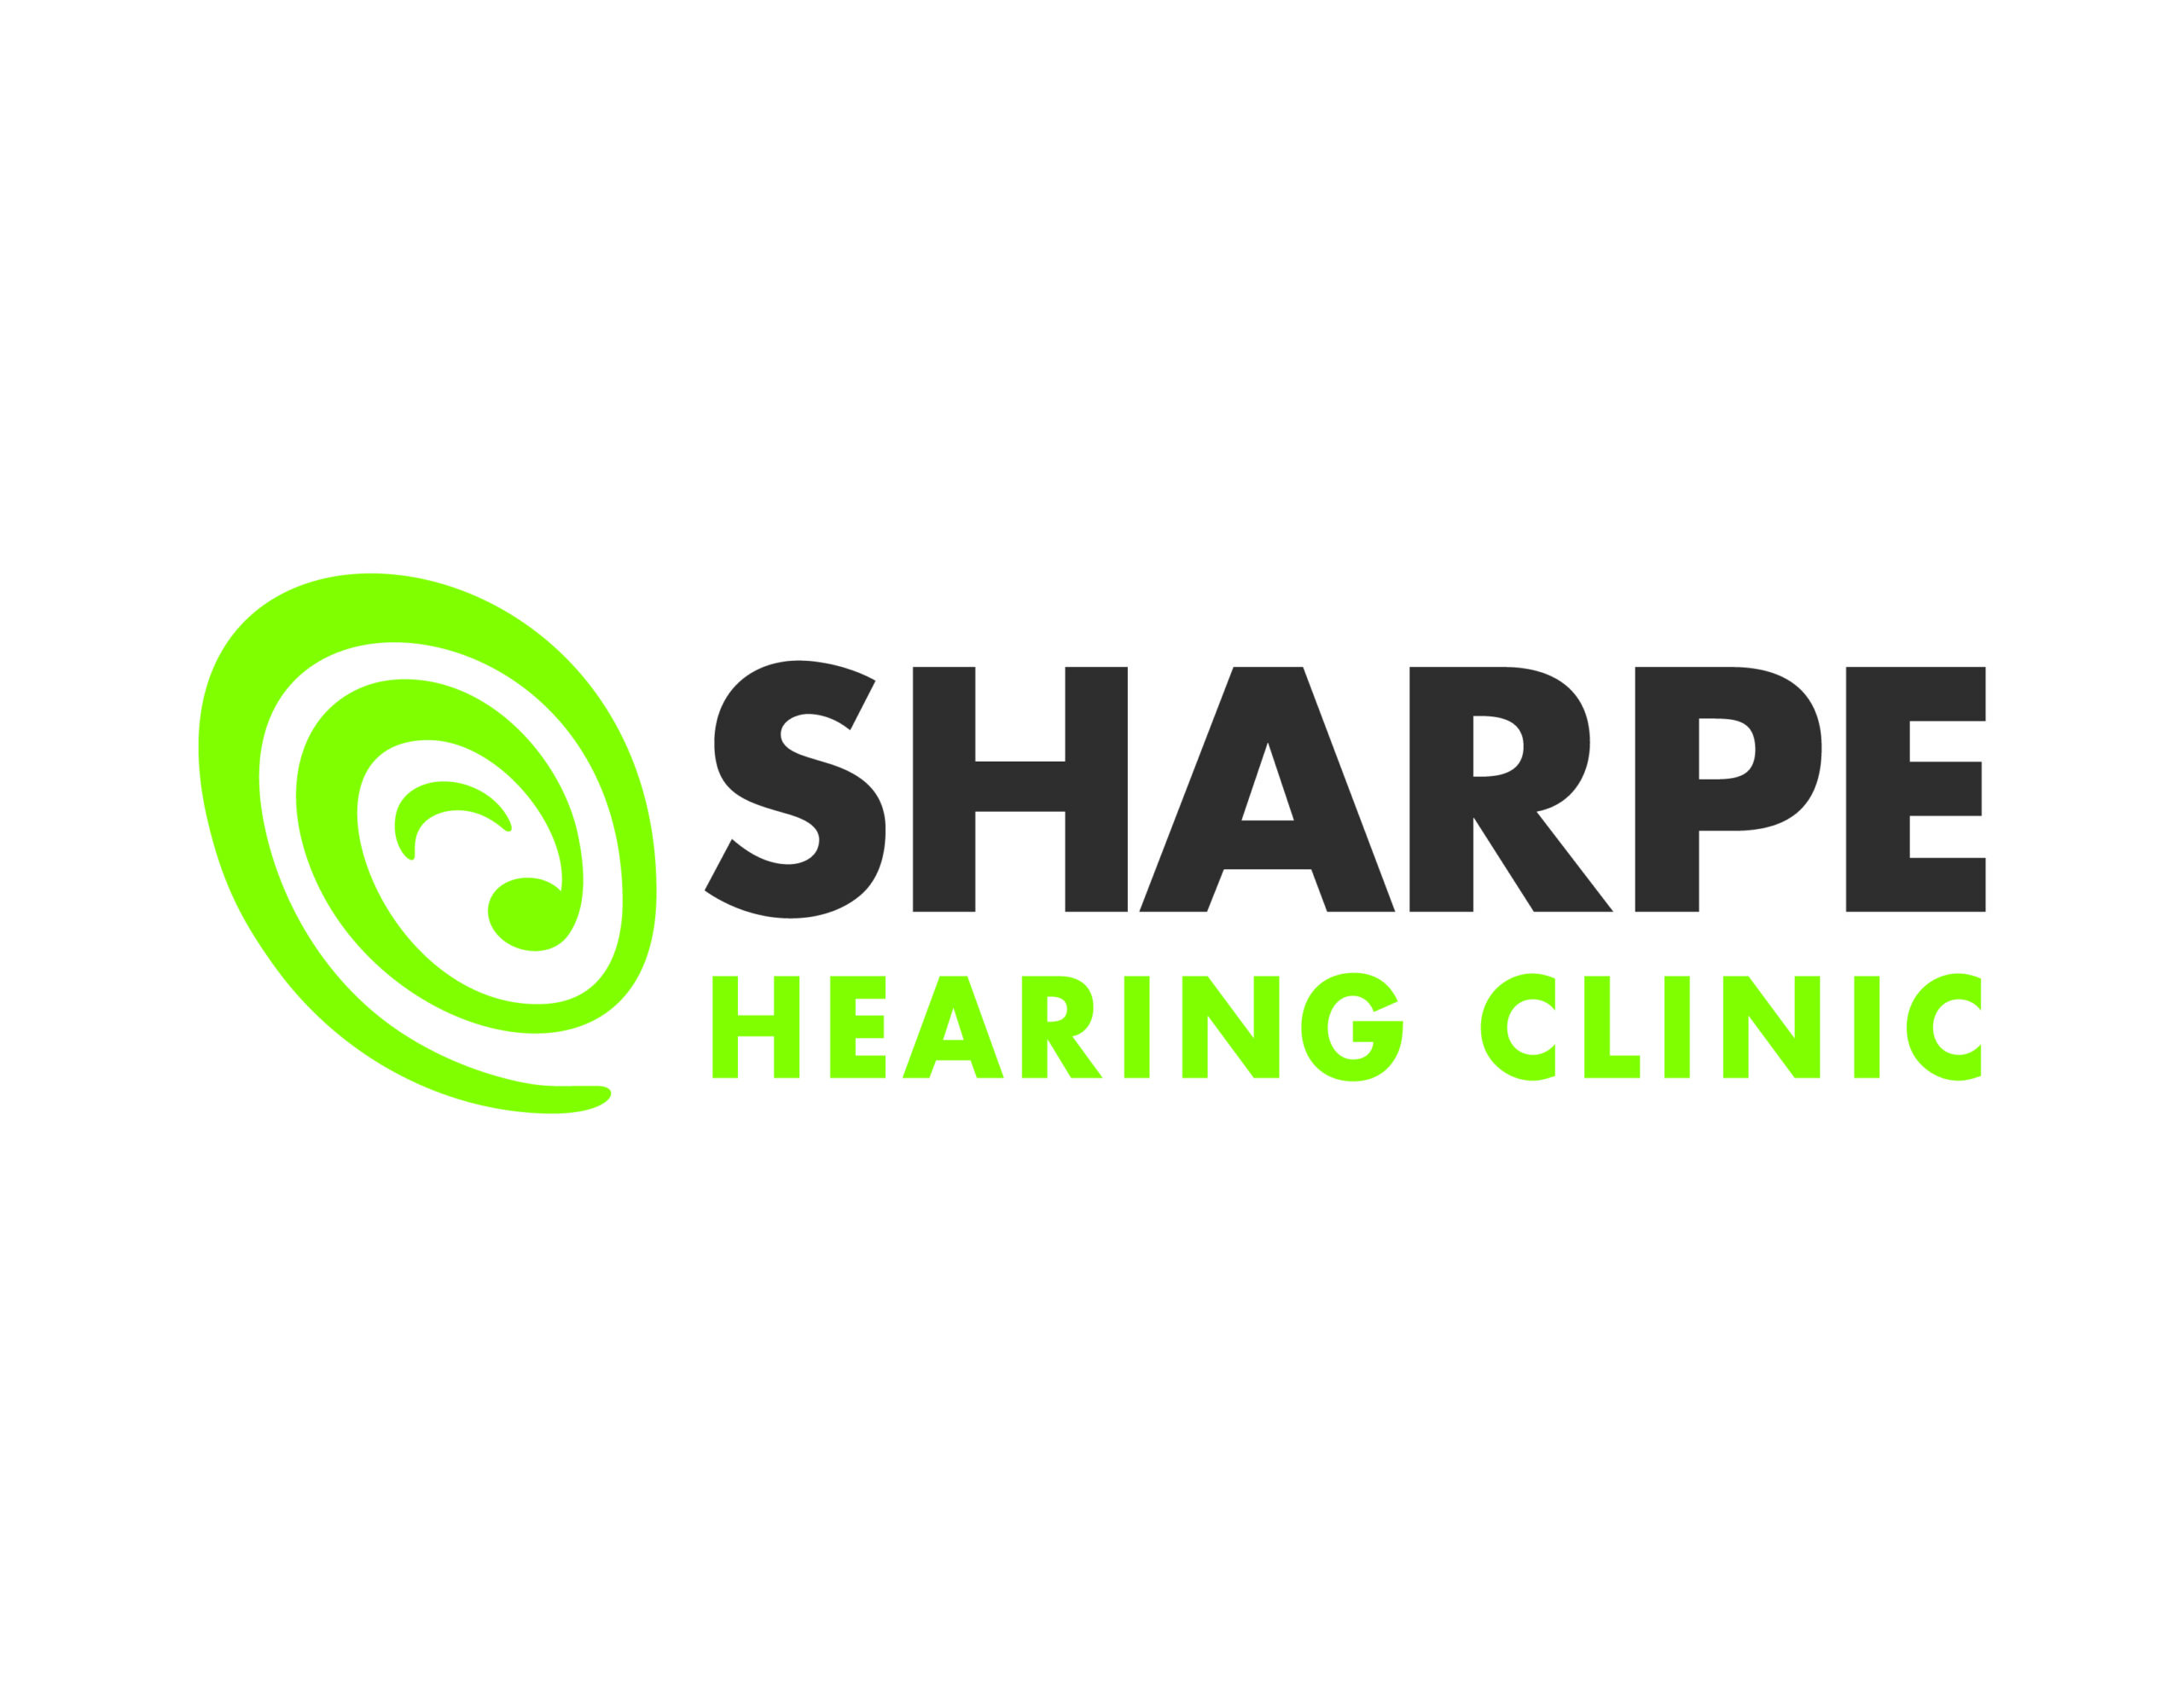 Sharpe hearing clinic logo